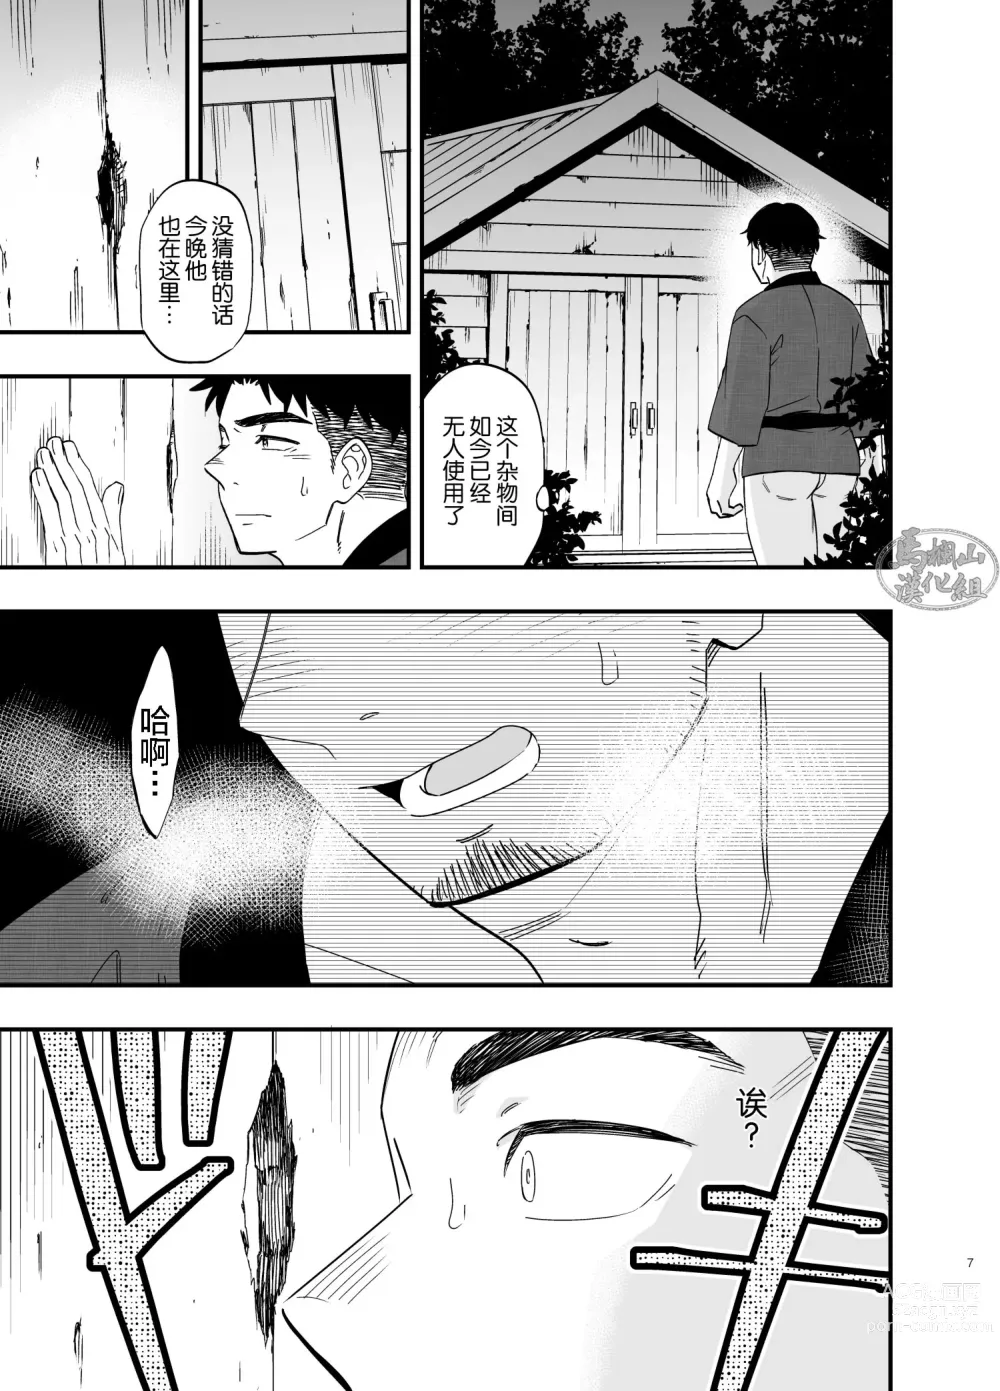 Page 8 of manga 穴